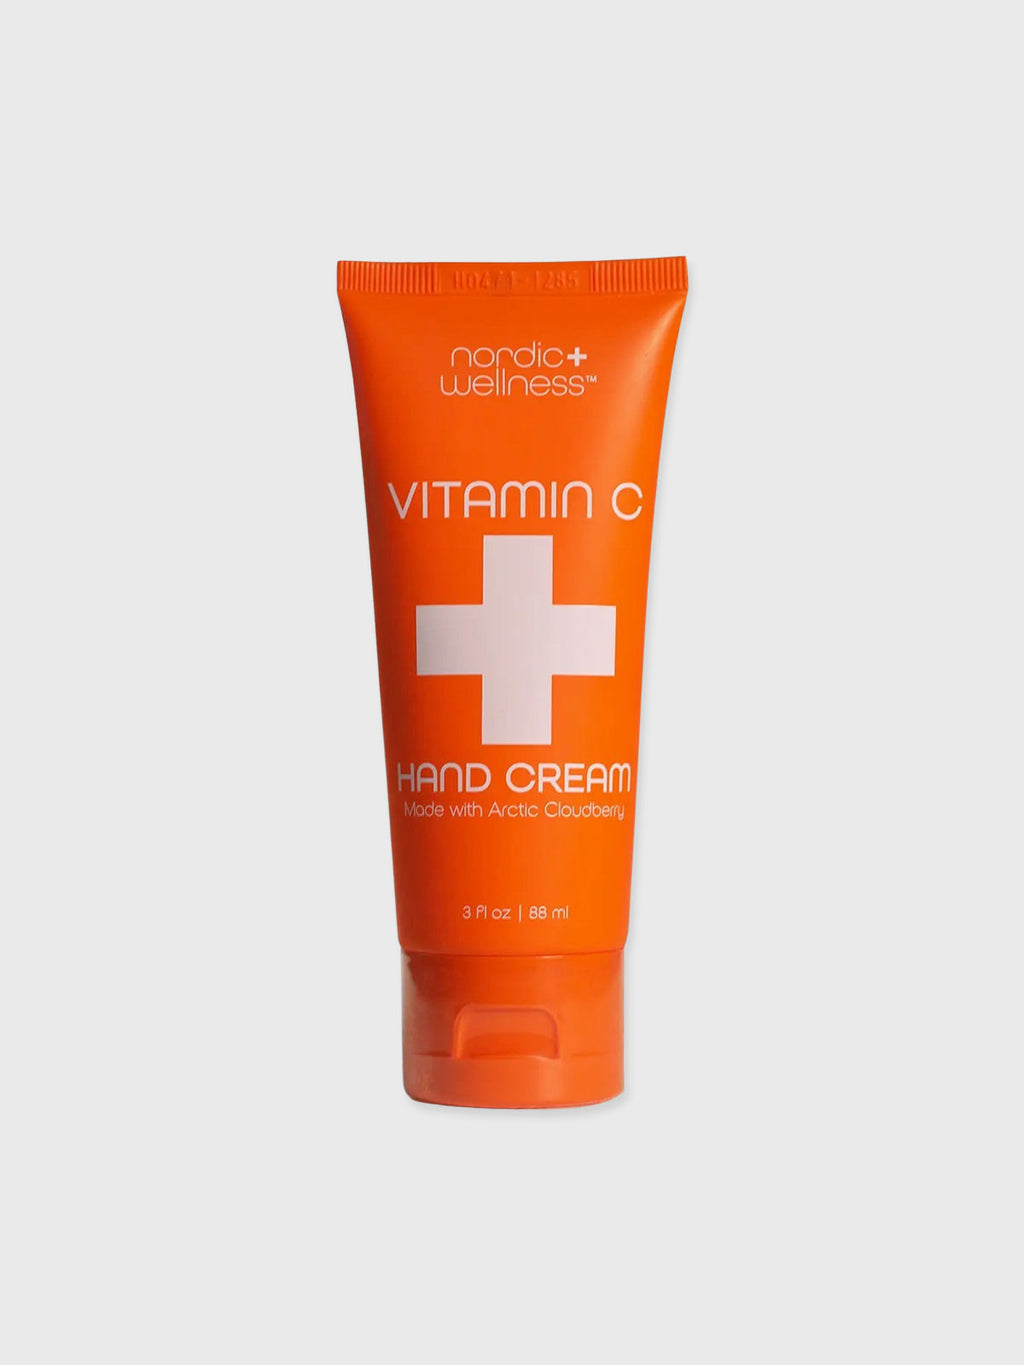 Nordic+Wellness - Vitamin C Hand Cream 88ml